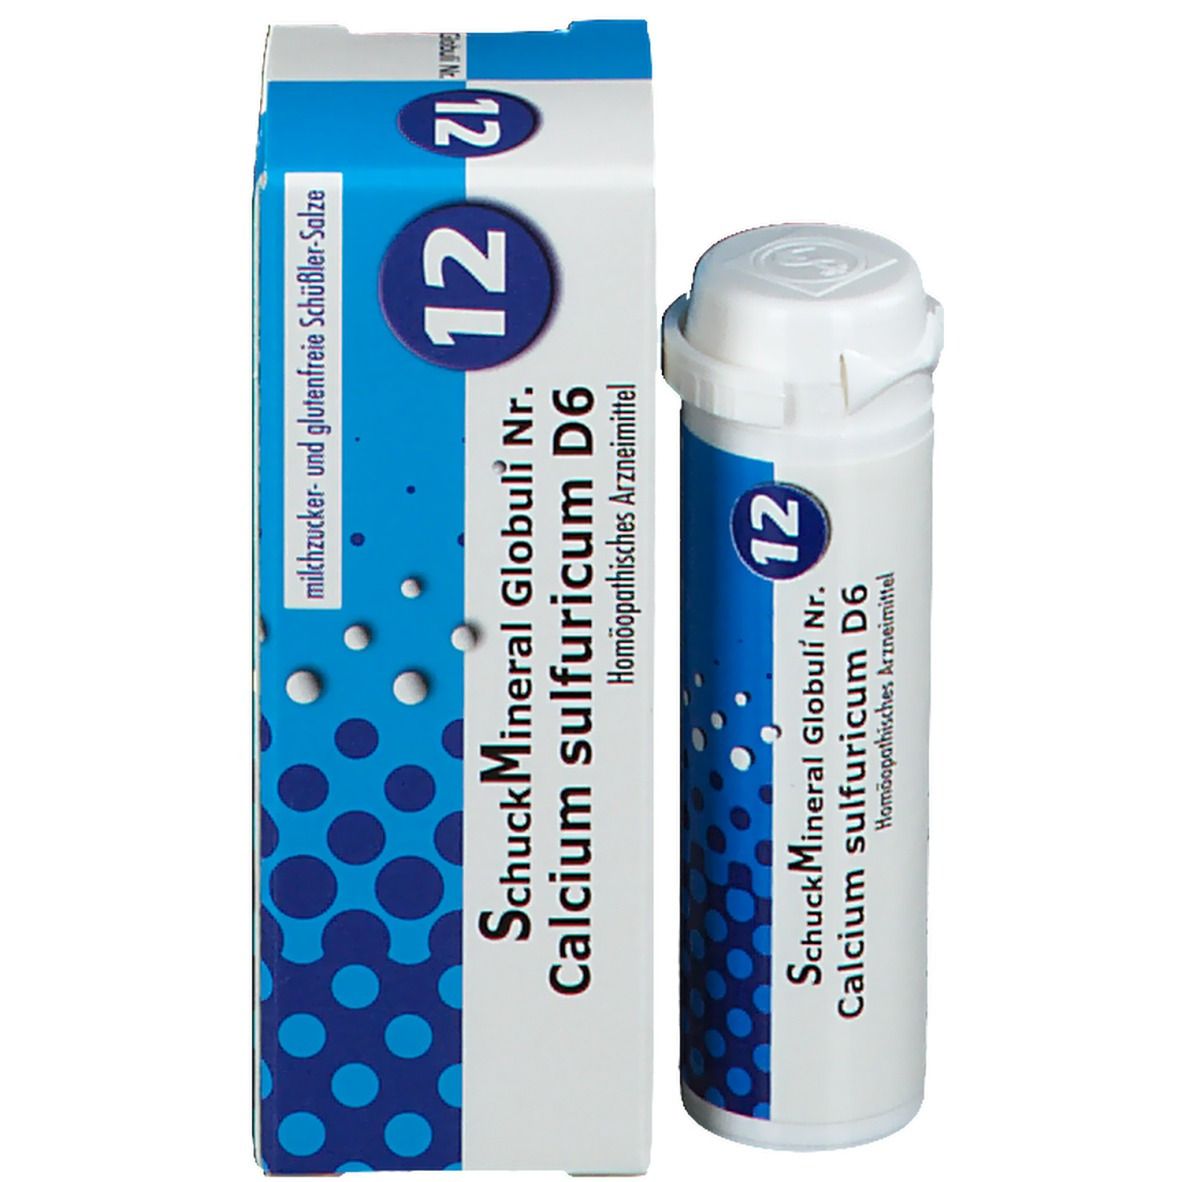 SchuckMineral Globuli Nr. 12 Calcium sulfuricum D6